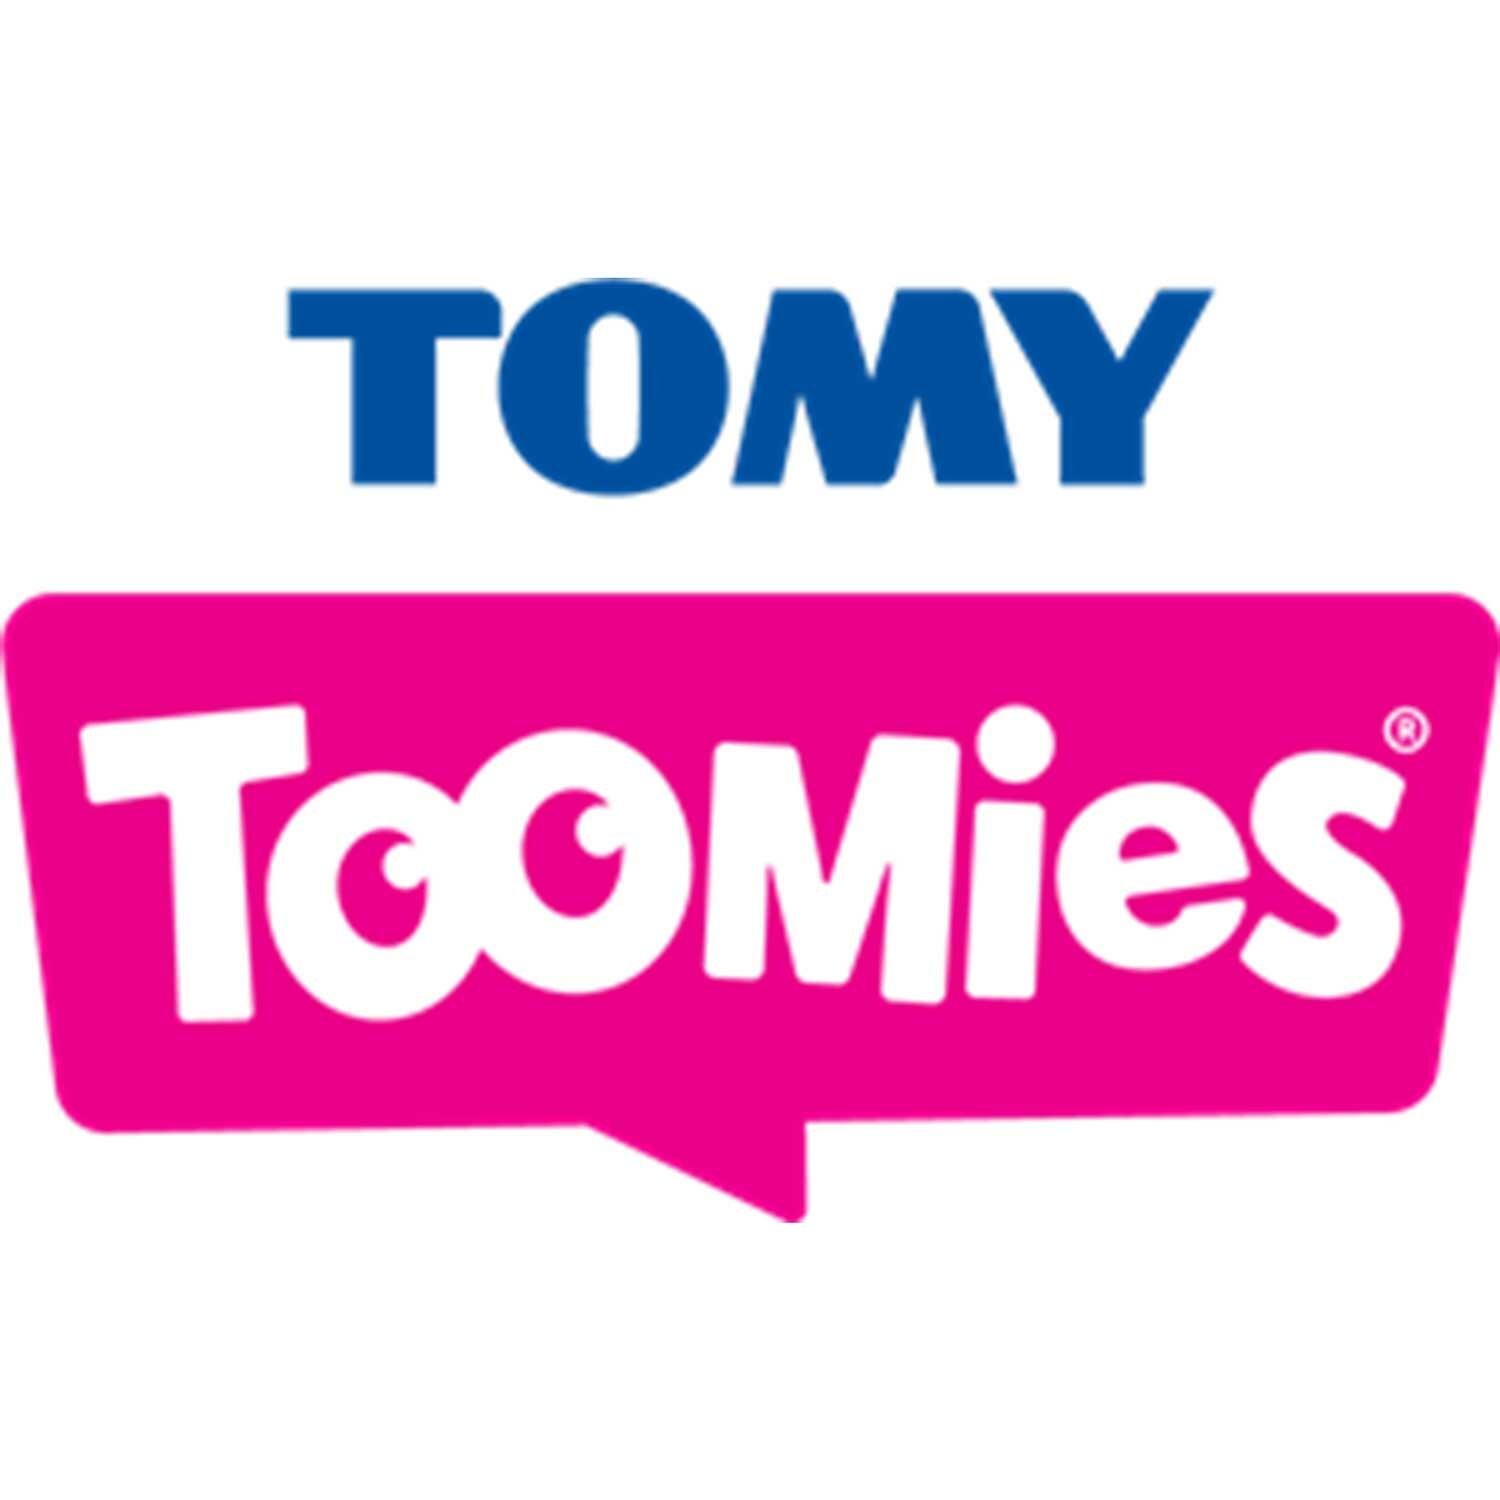 tomy toomies